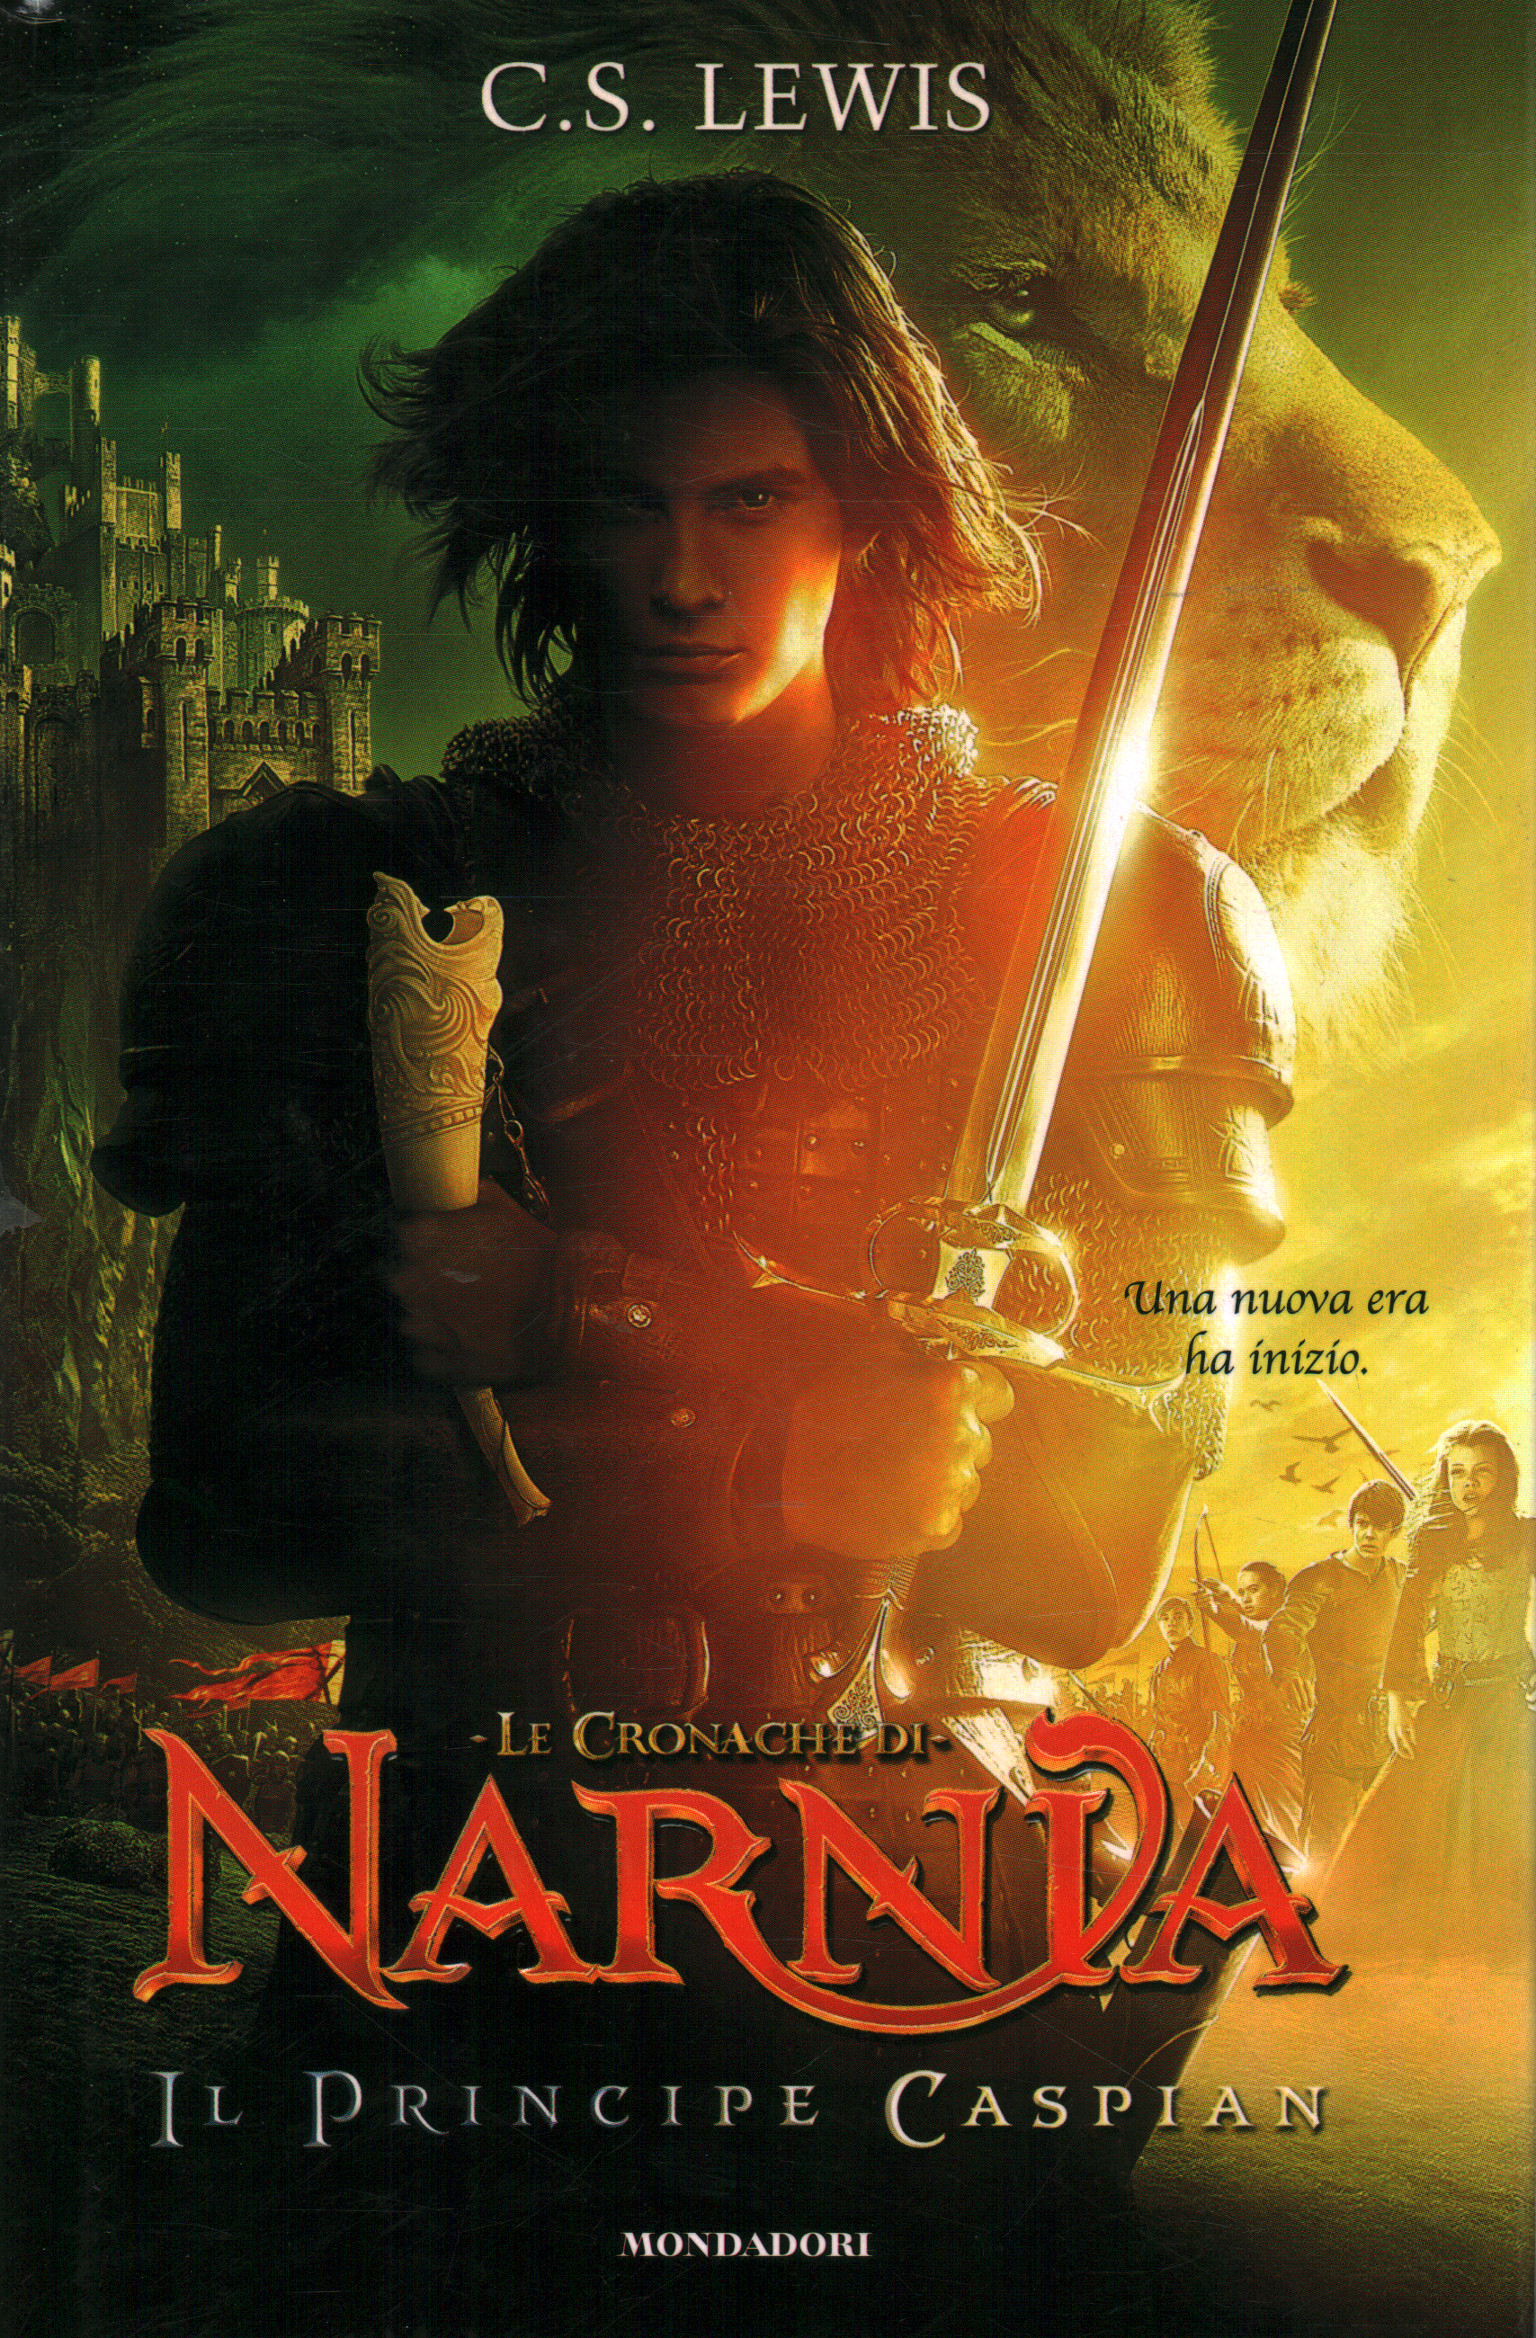 Le Cronache di Narnia - Il principe Caspian, C.S. Lewis